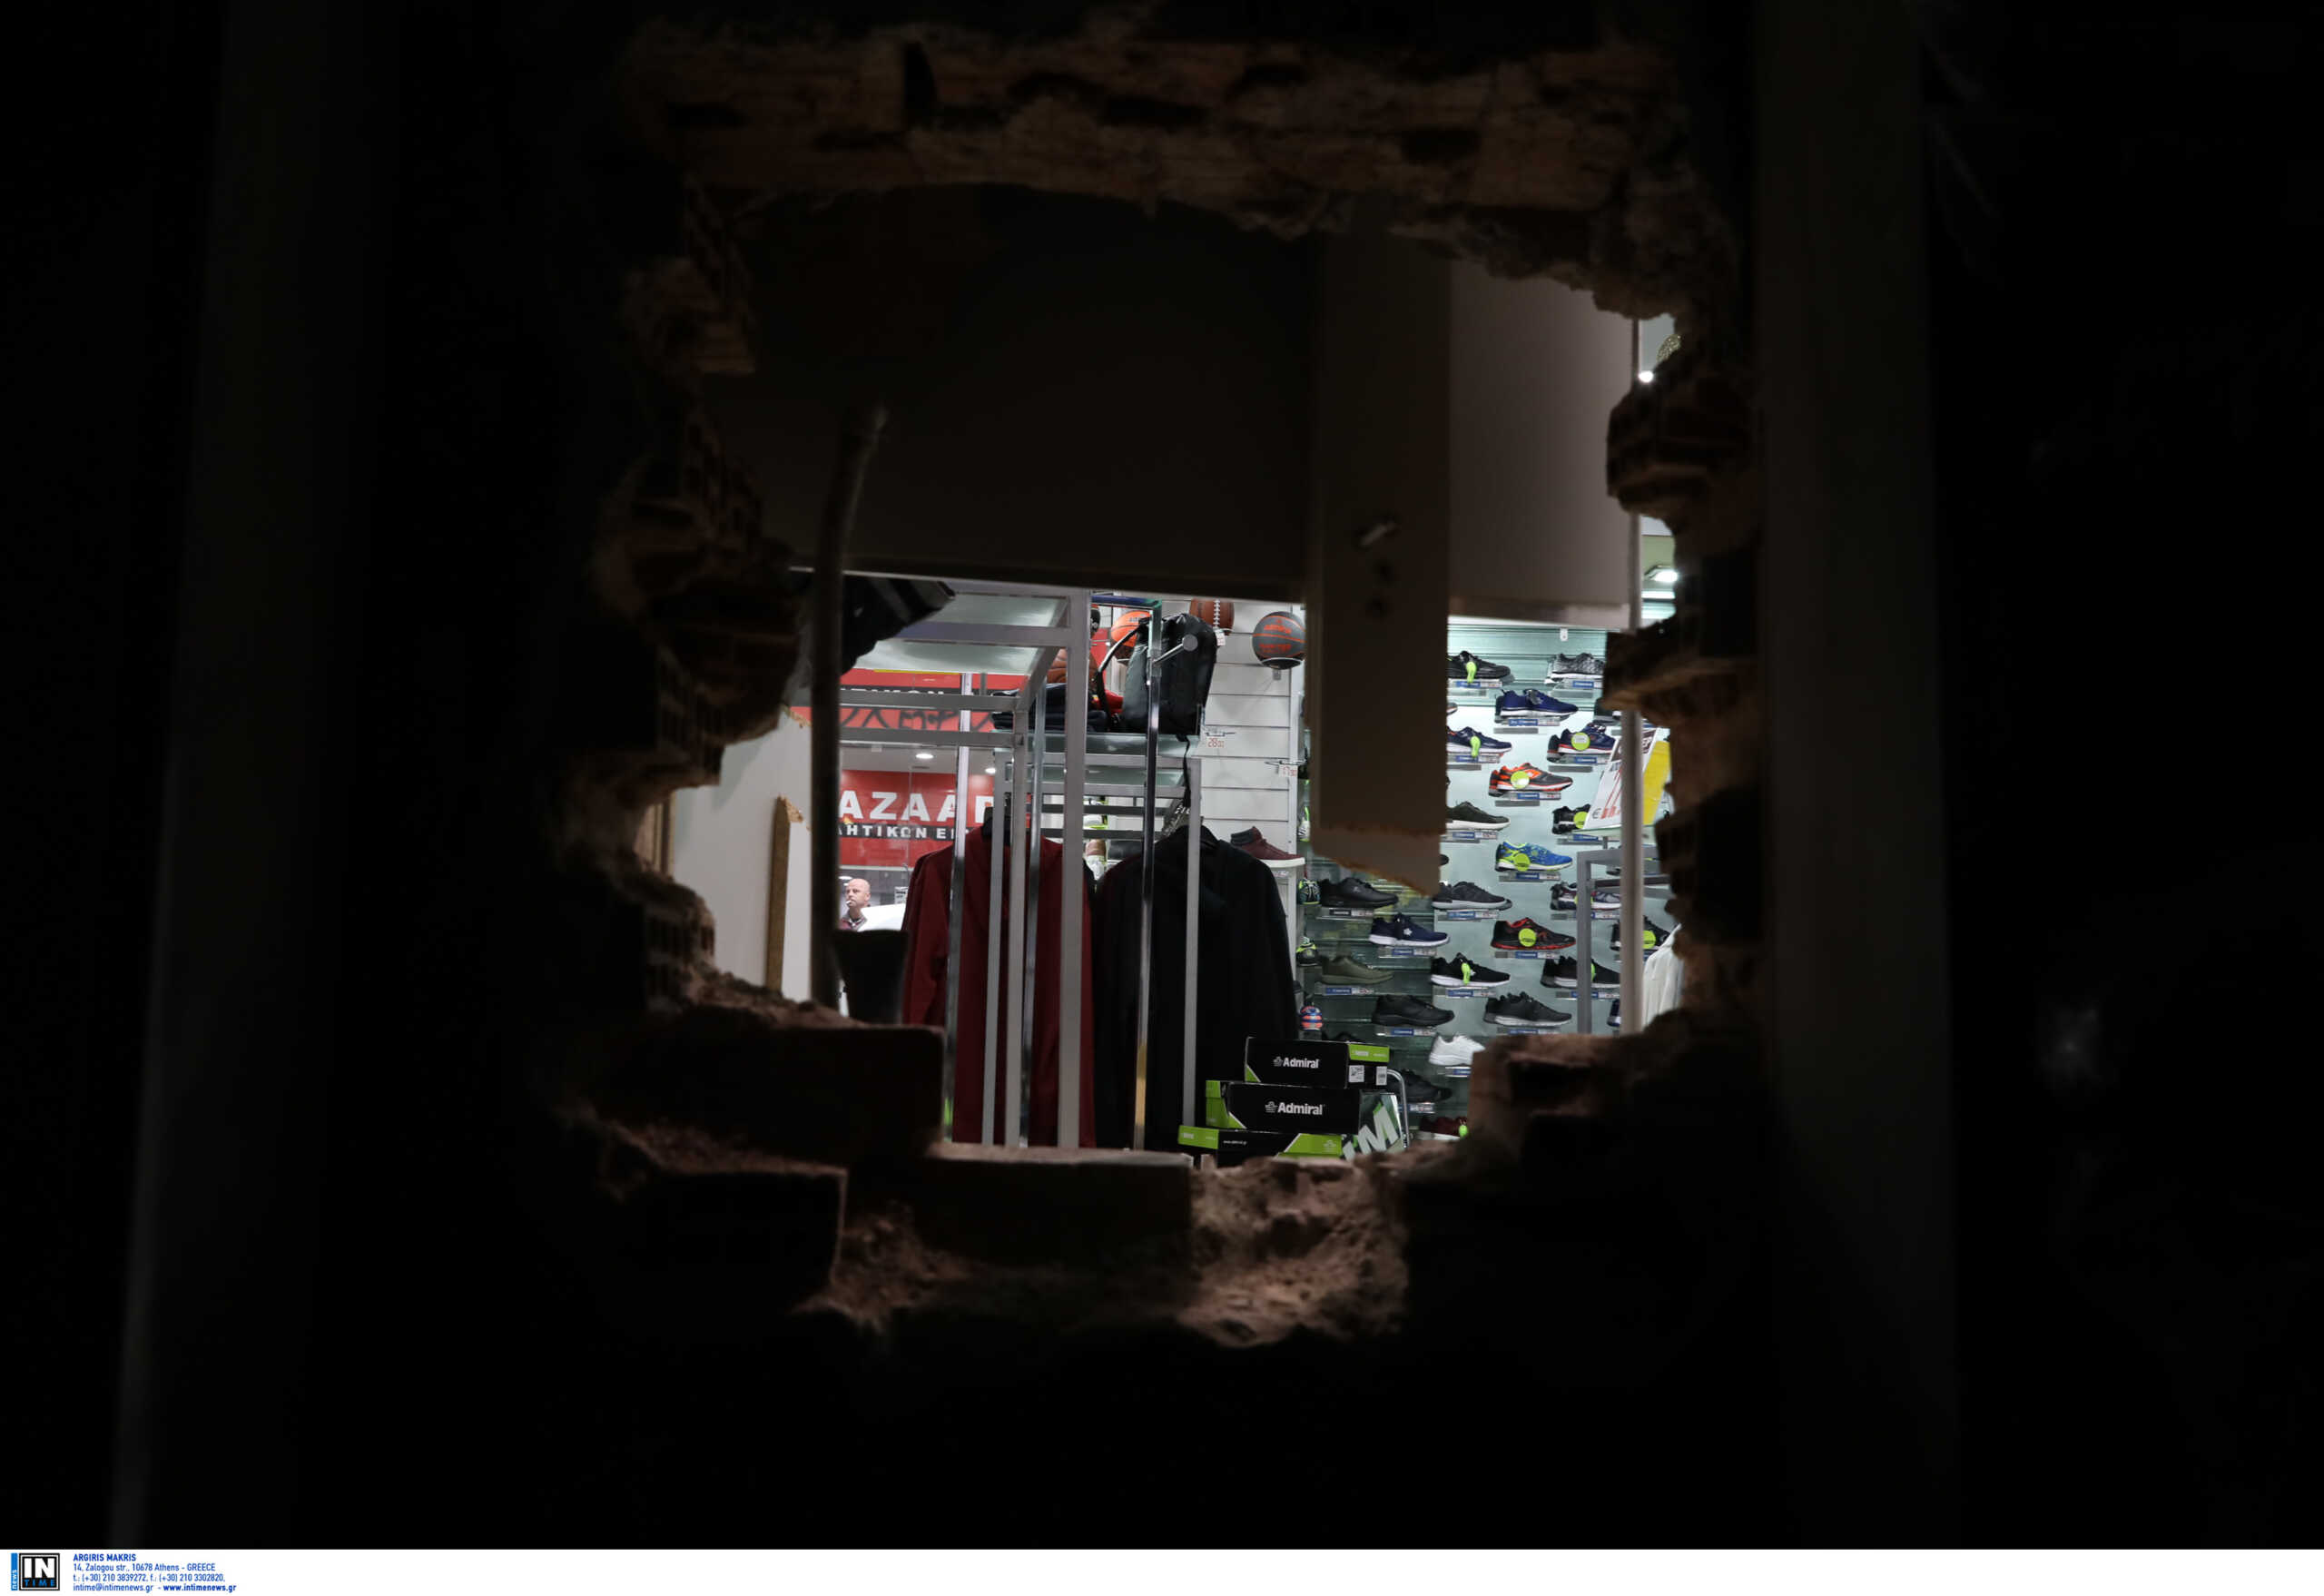 Καλαμάτα: Έκανε 8 διαρρήξεις σε καταστήματα μέσα σε 9 μέρες – Στα χέρια της αστυνομίας ο δράστης